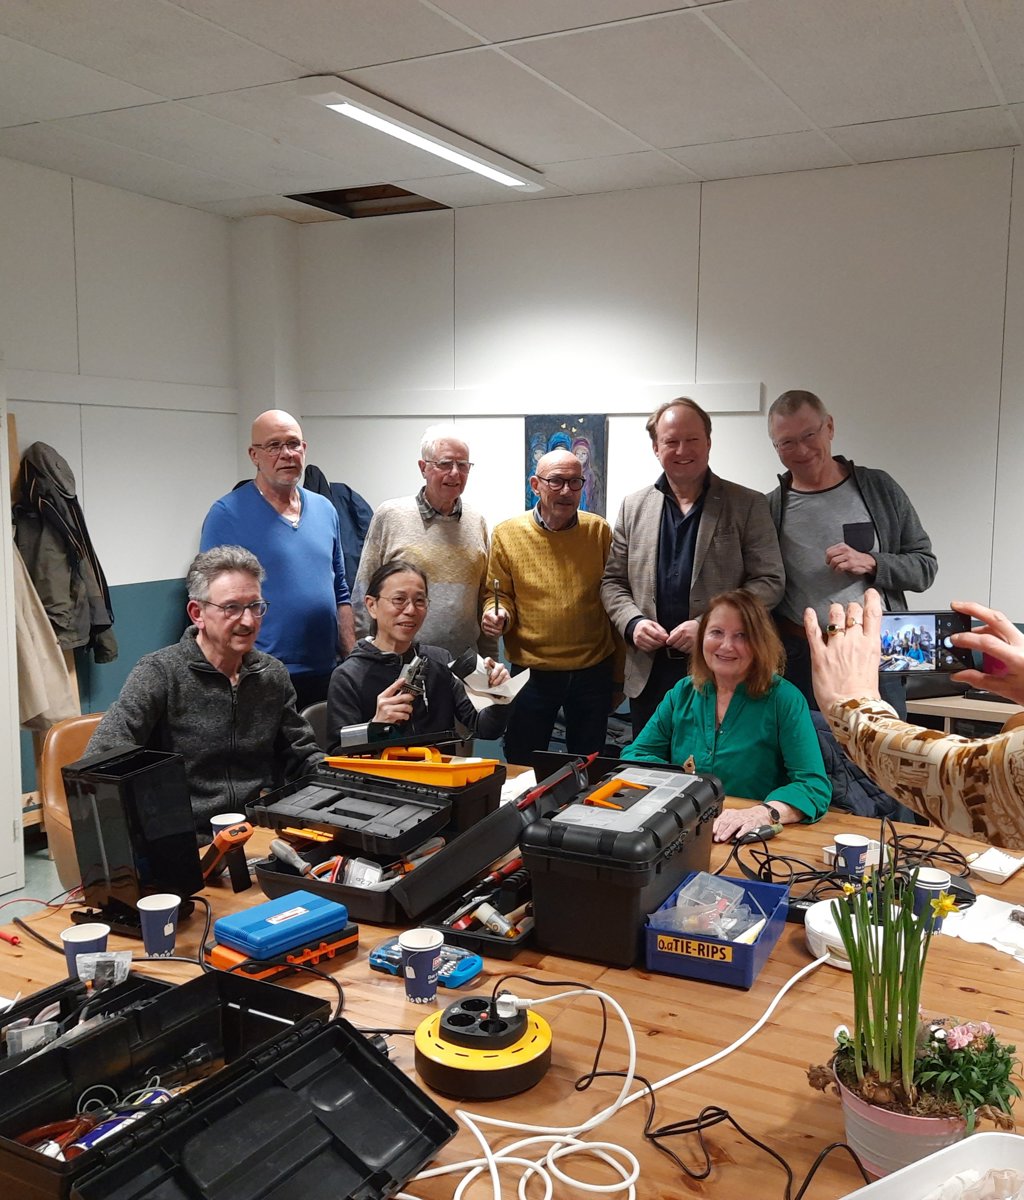 Burgemeester Hein van der Loo met de vrijwilligers van Repair Café Regenboogbuurt. (Foto: aangeleverd)